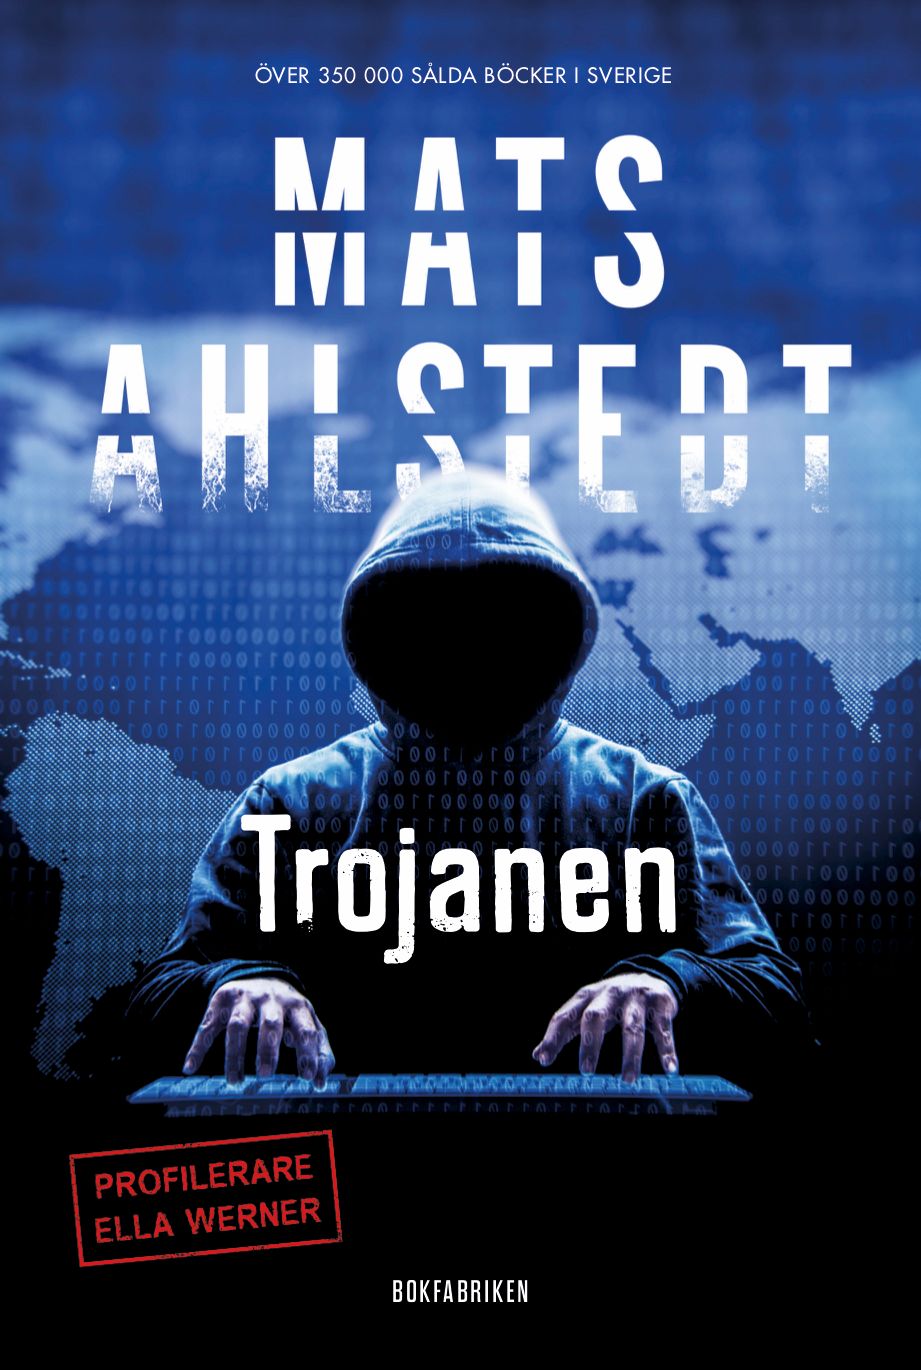 Trojanen, e-bok av Mats Ahlstedt